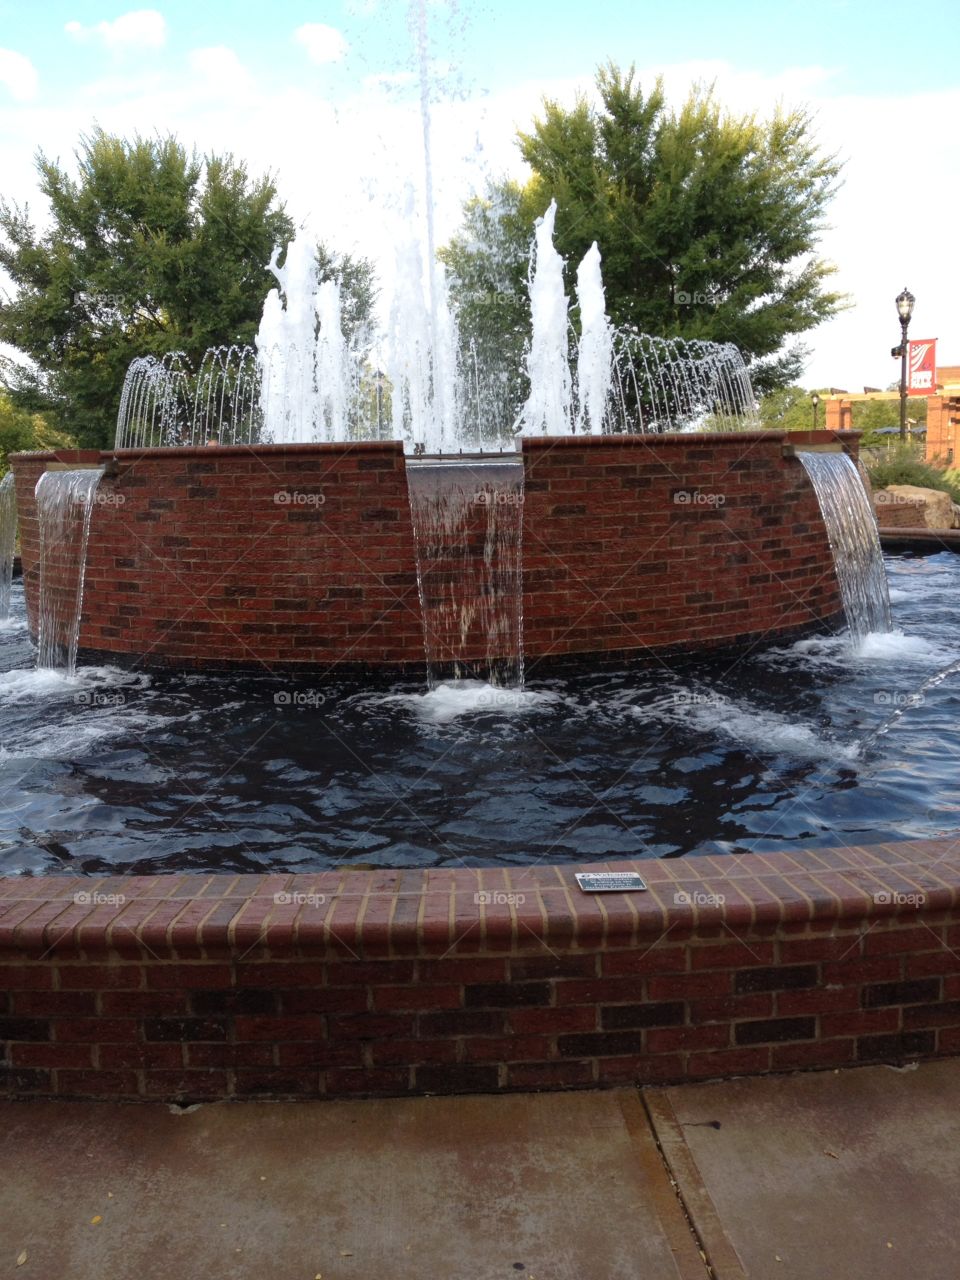 Greer, SC park fountain